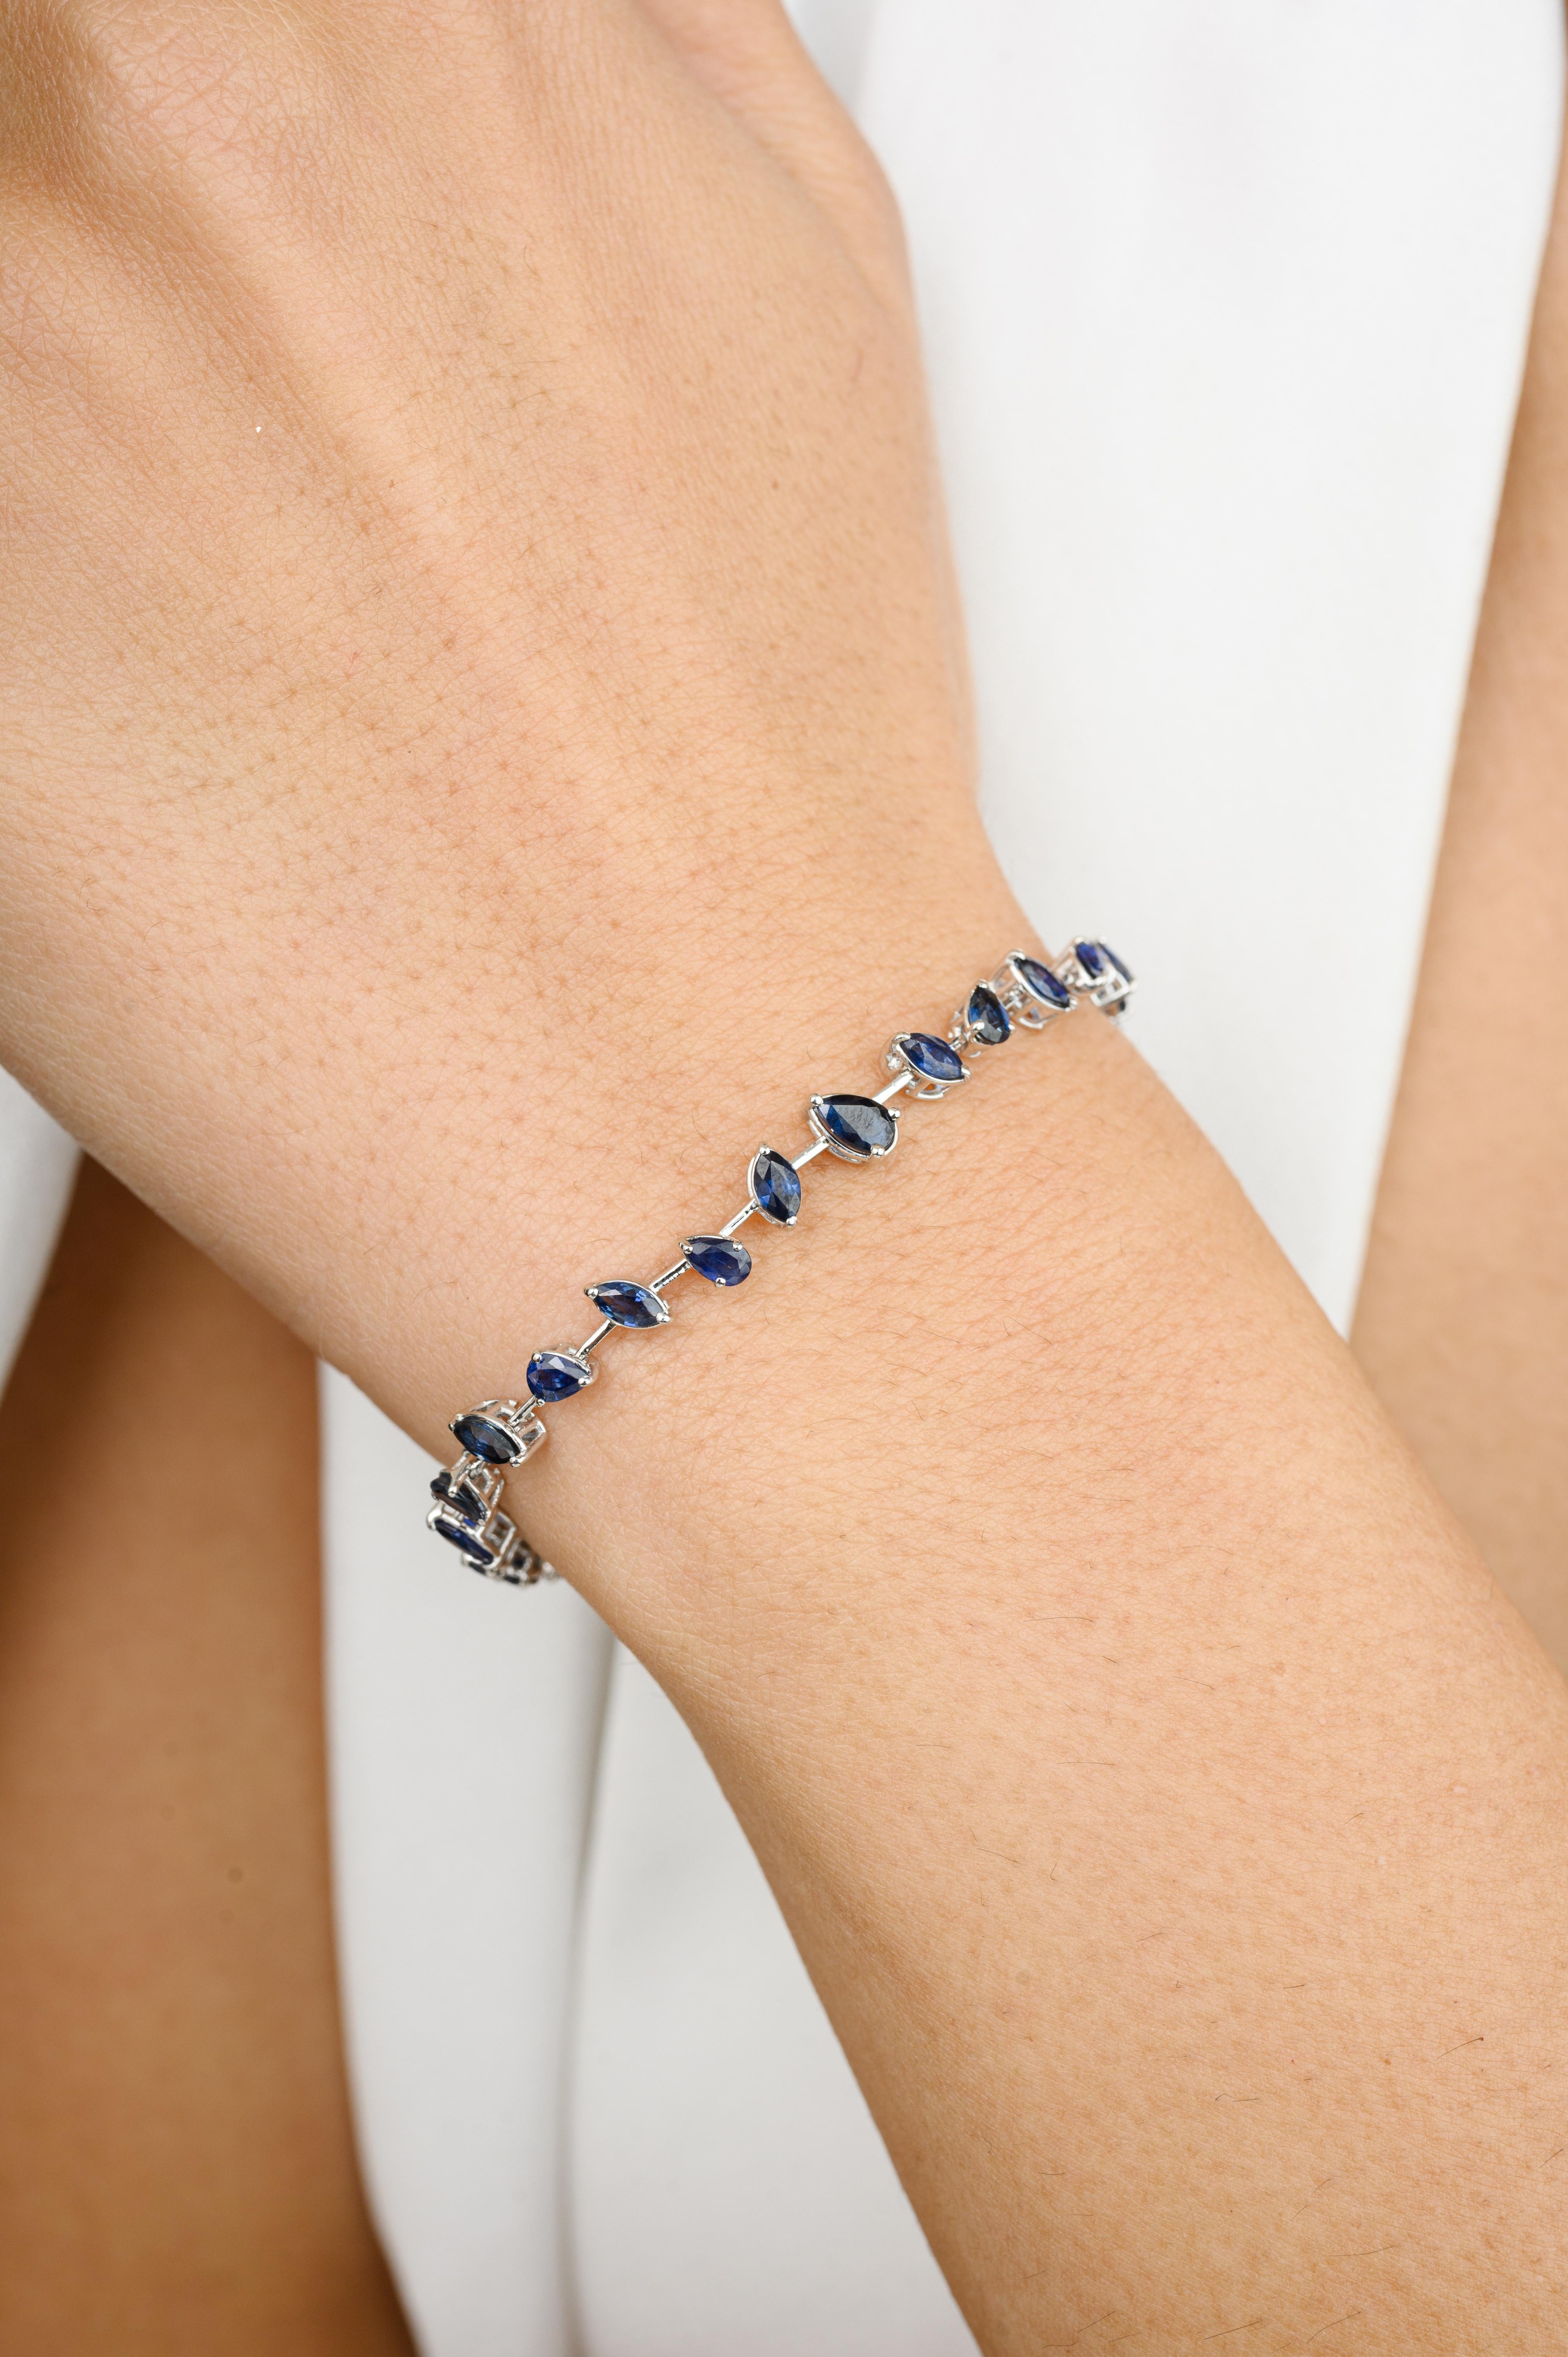 Ce bracelet moderne en saphir bleu naturel en or 18 carats met en valeur un saphir bleu naturel de 3,95 carats, étincelant à l'infini. Il mesure 7 pouces de long. 
Le saphir stimule la concentration et réduit le stress. 
Conçue avec des saphirs